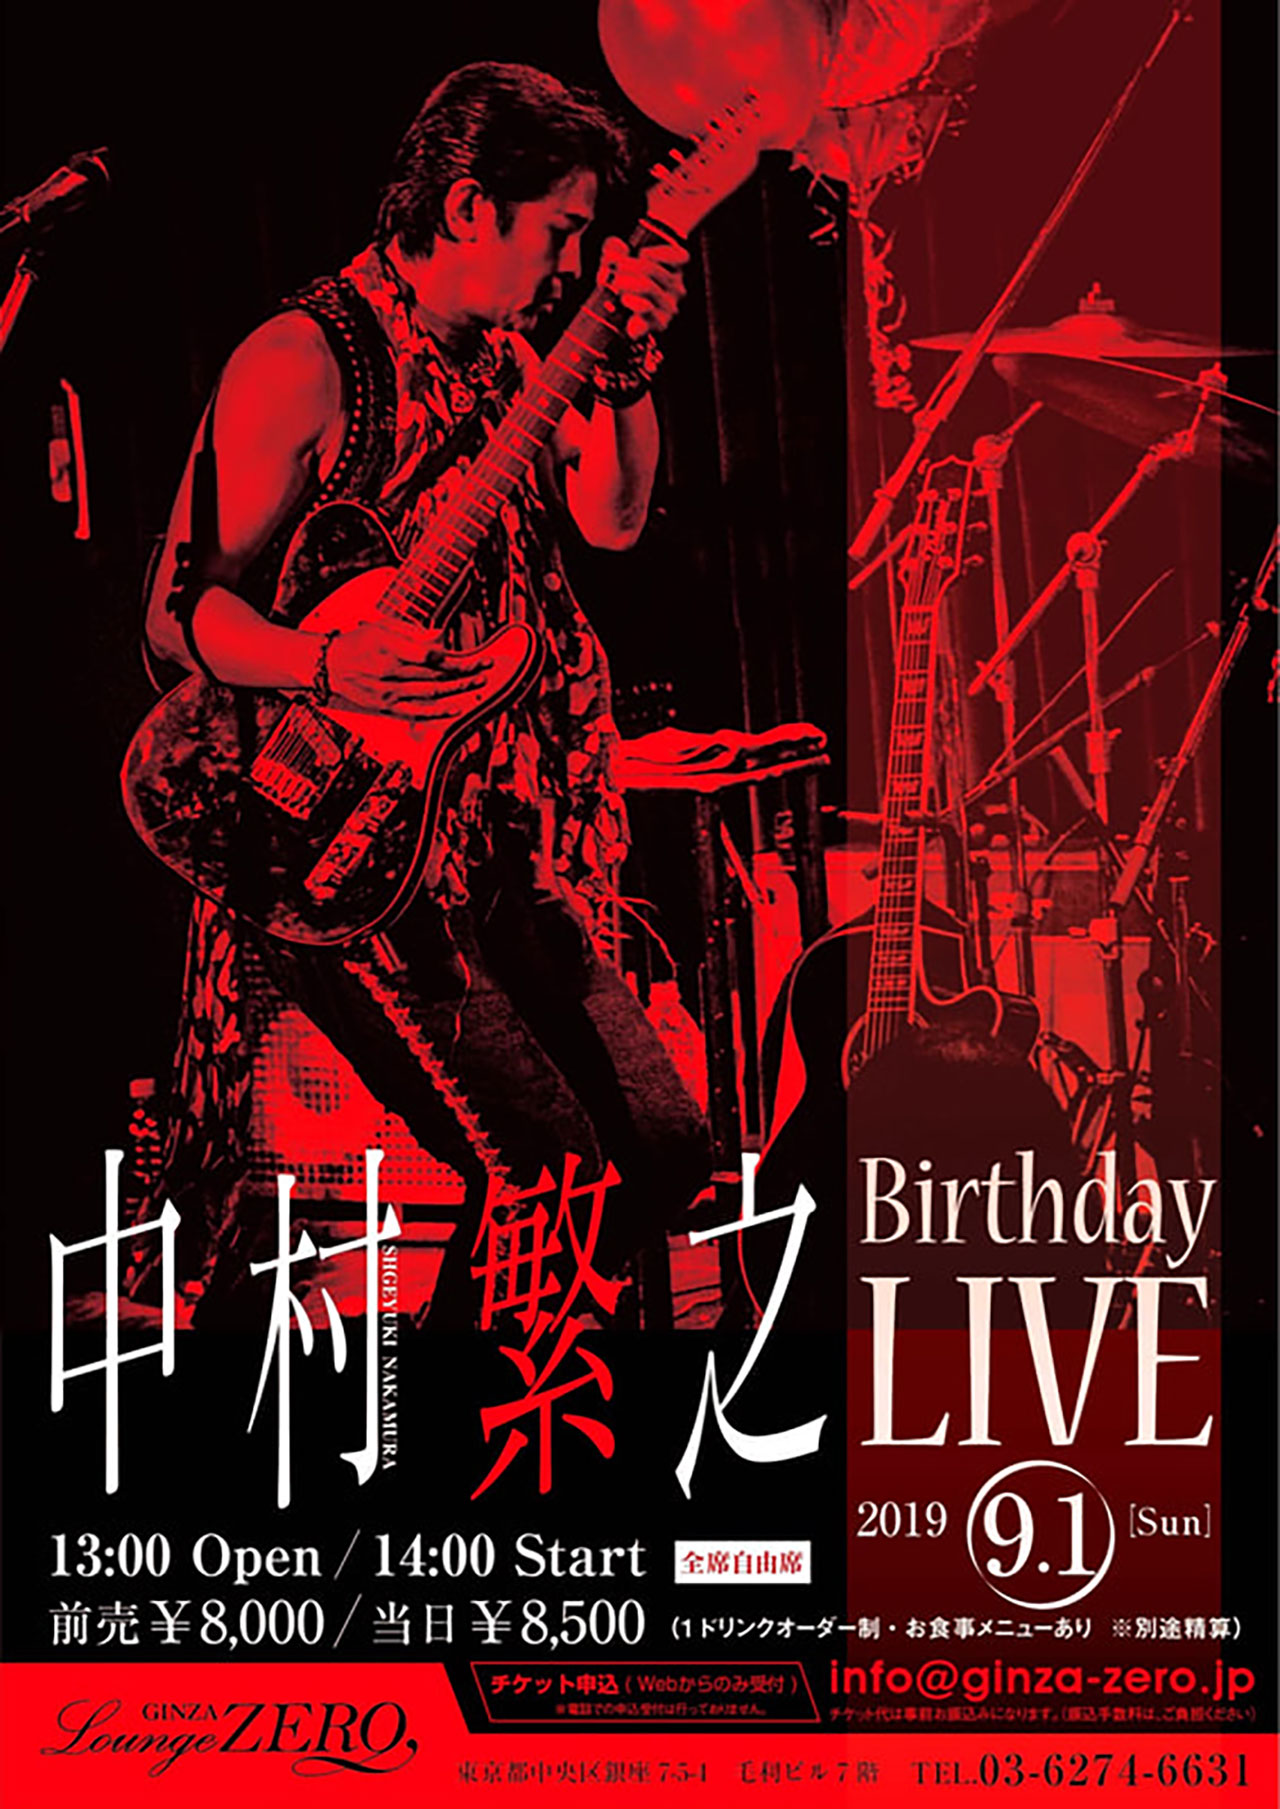 ありがとうございました【超満員御礼】「Birthday LIVE」GINZA Lounge ZERO